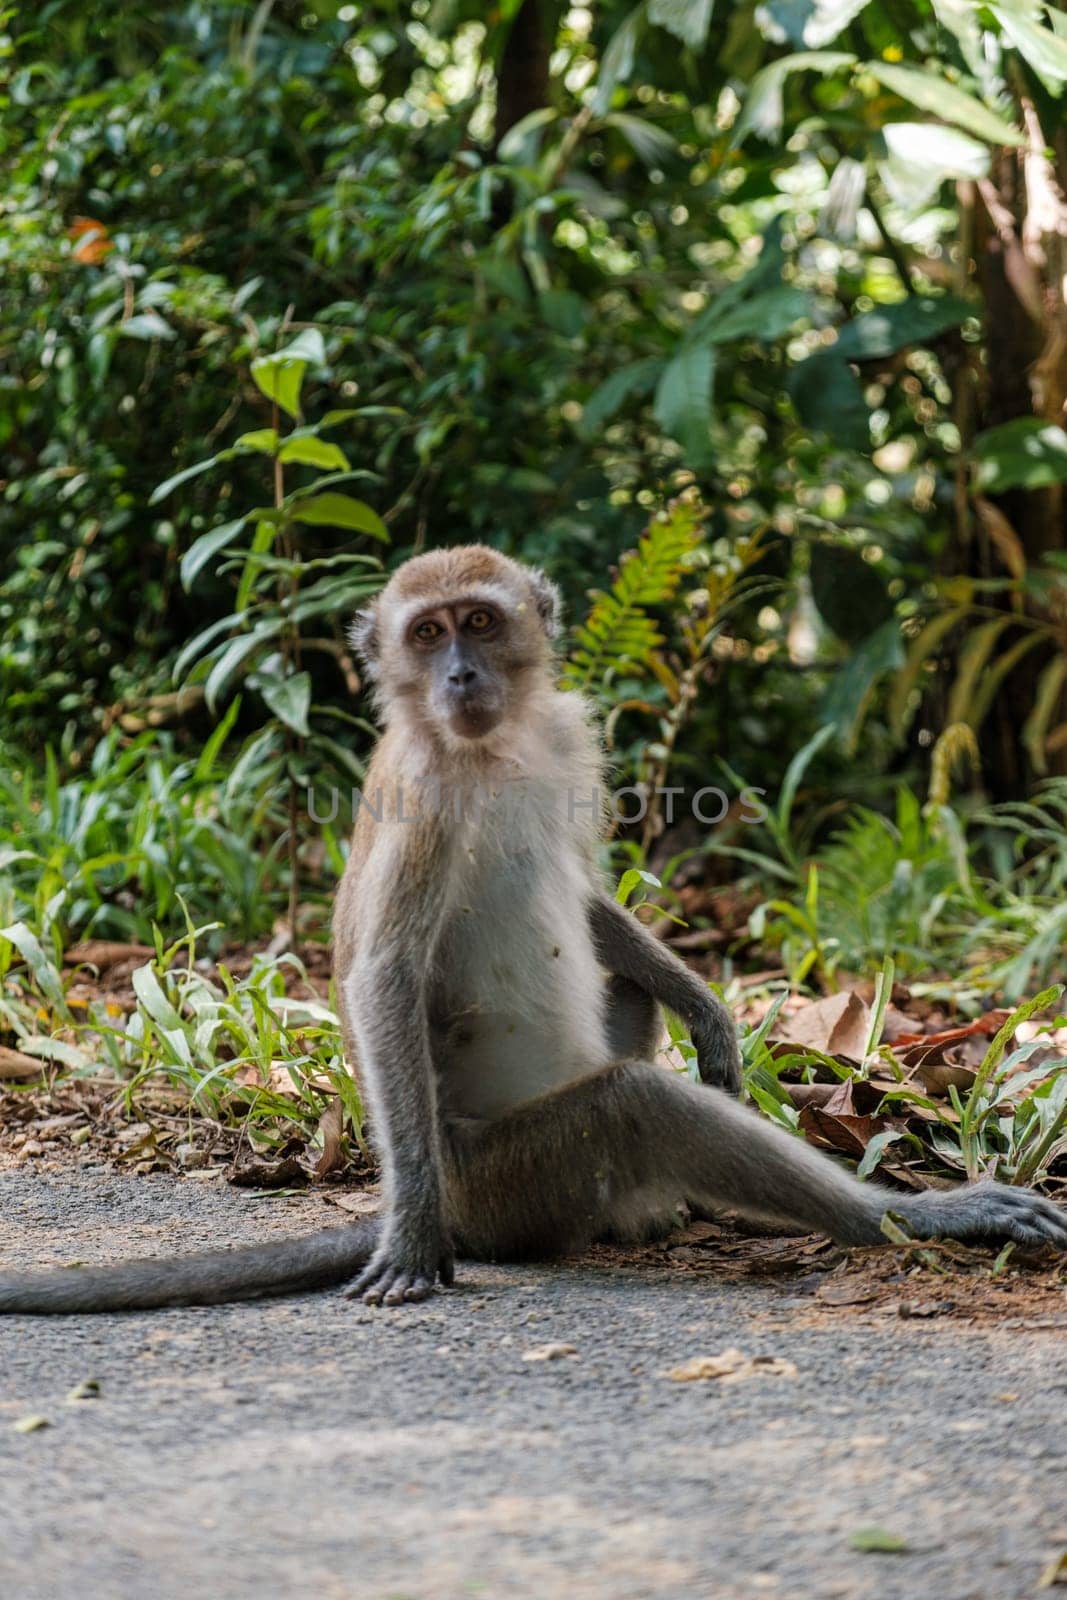 Monkey Sitting on Roadside Poses